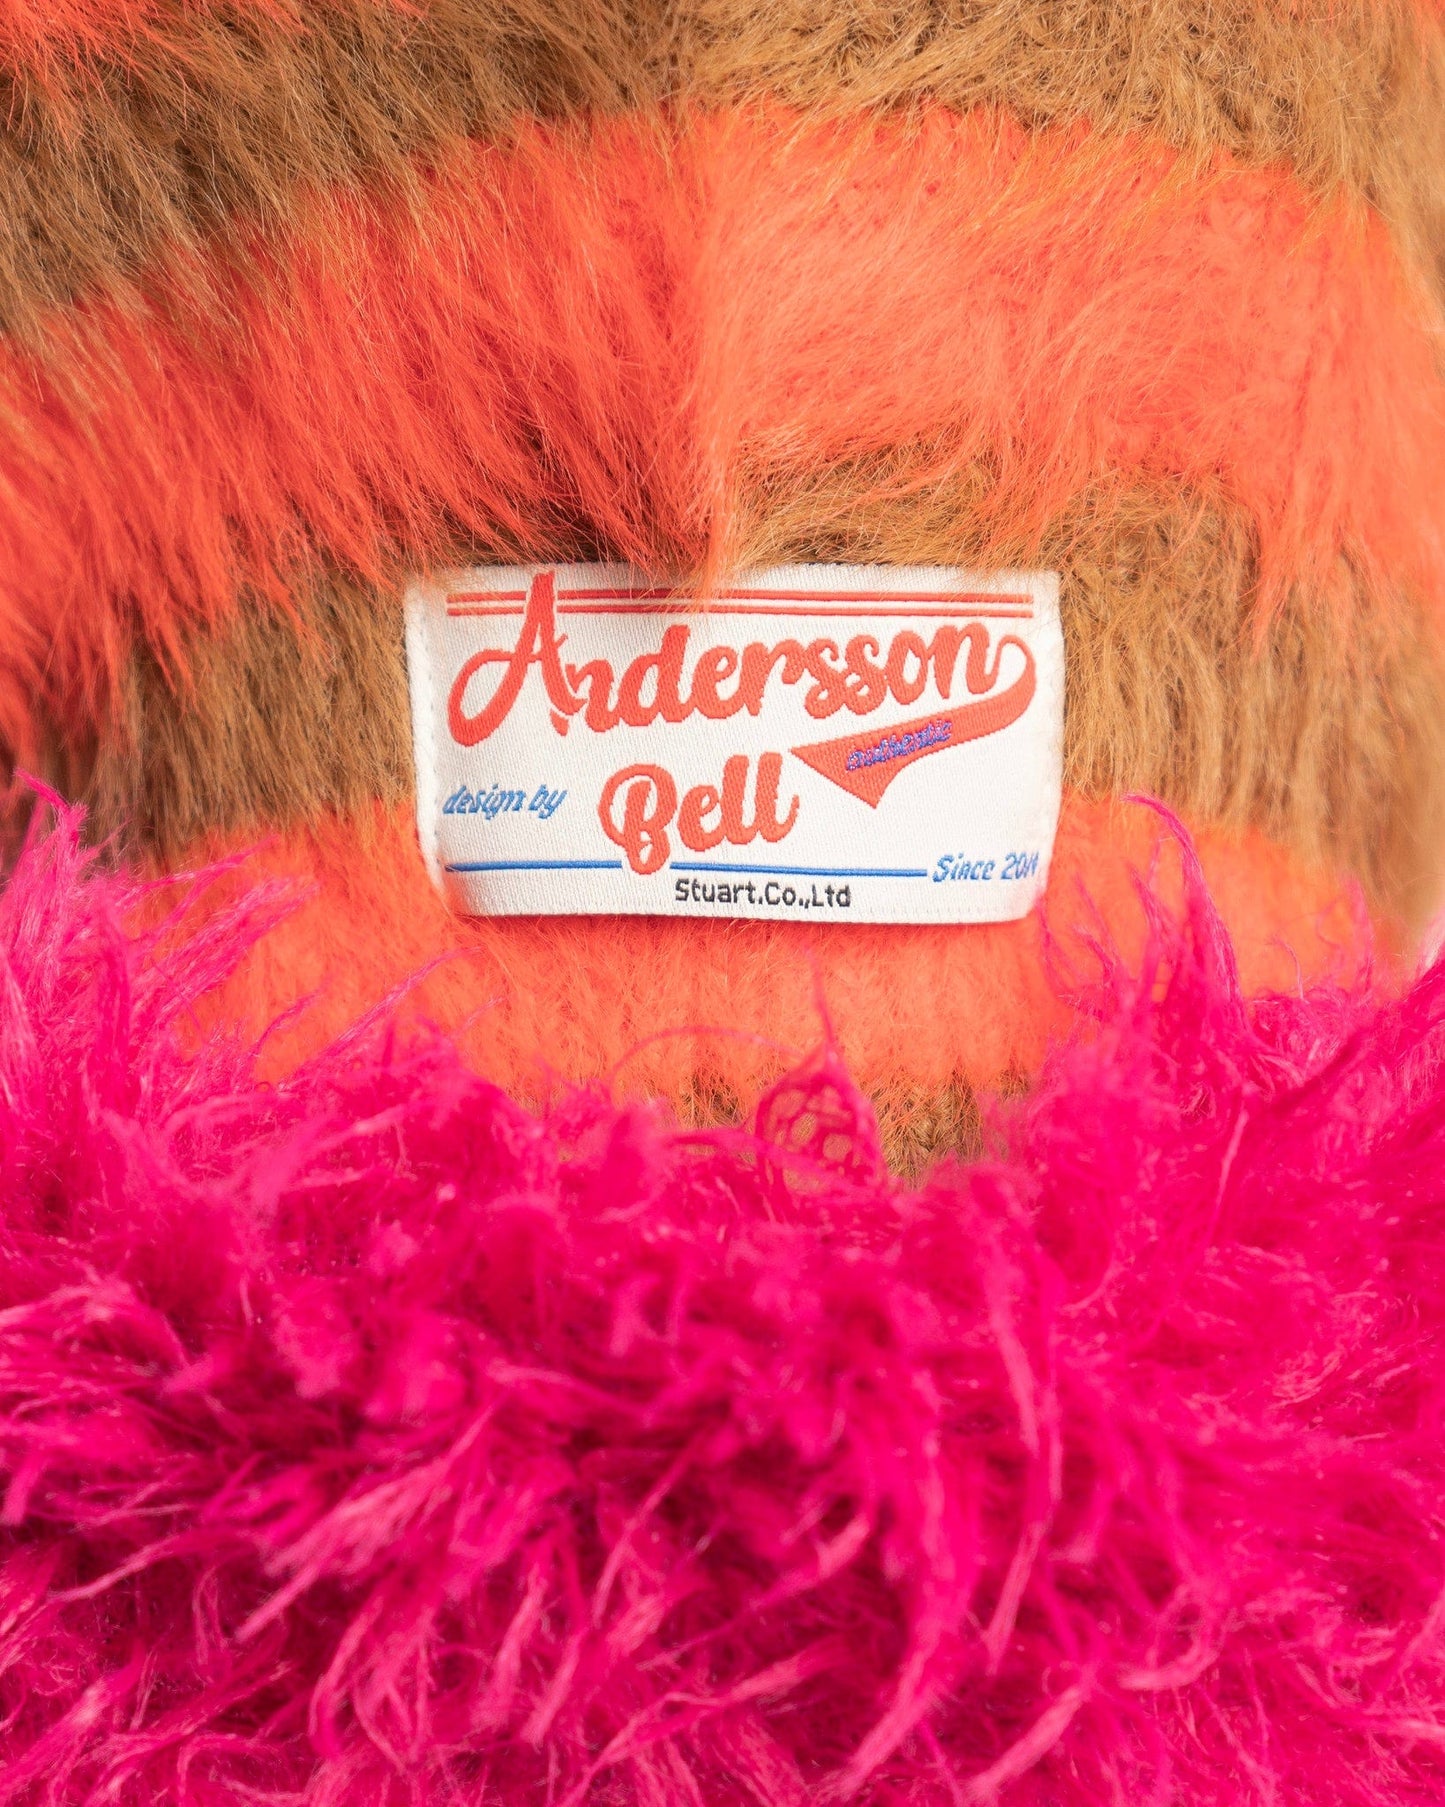 Andersson Bell Women's Hats Sullivan Knit Balaclava in Orange Stripe